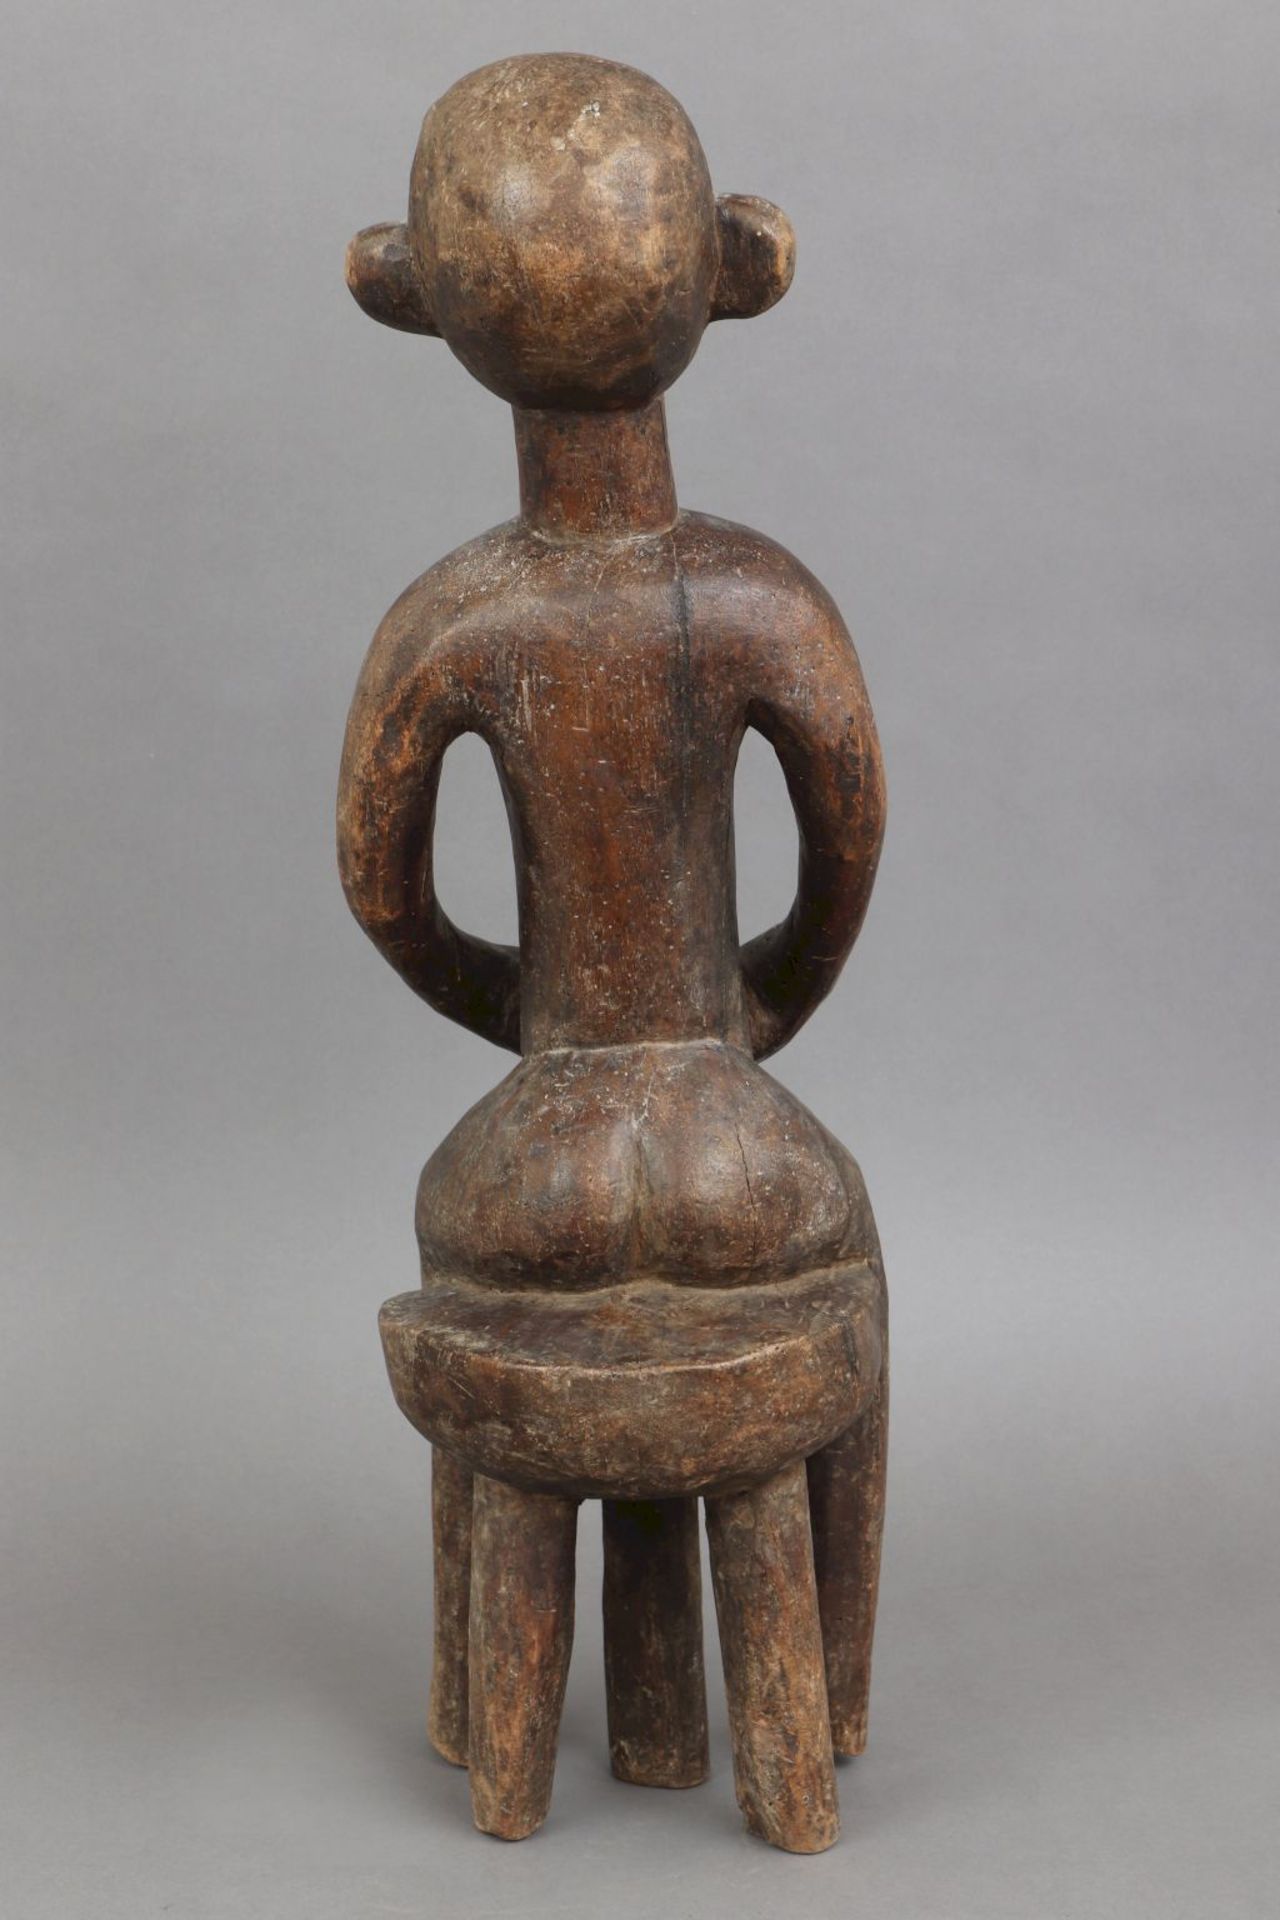 Afrikanische Ritualfigur, wohl Songye, Kongoauf Hocker sitzende weibliche Figur, die Hände an< - Image 4 of 4